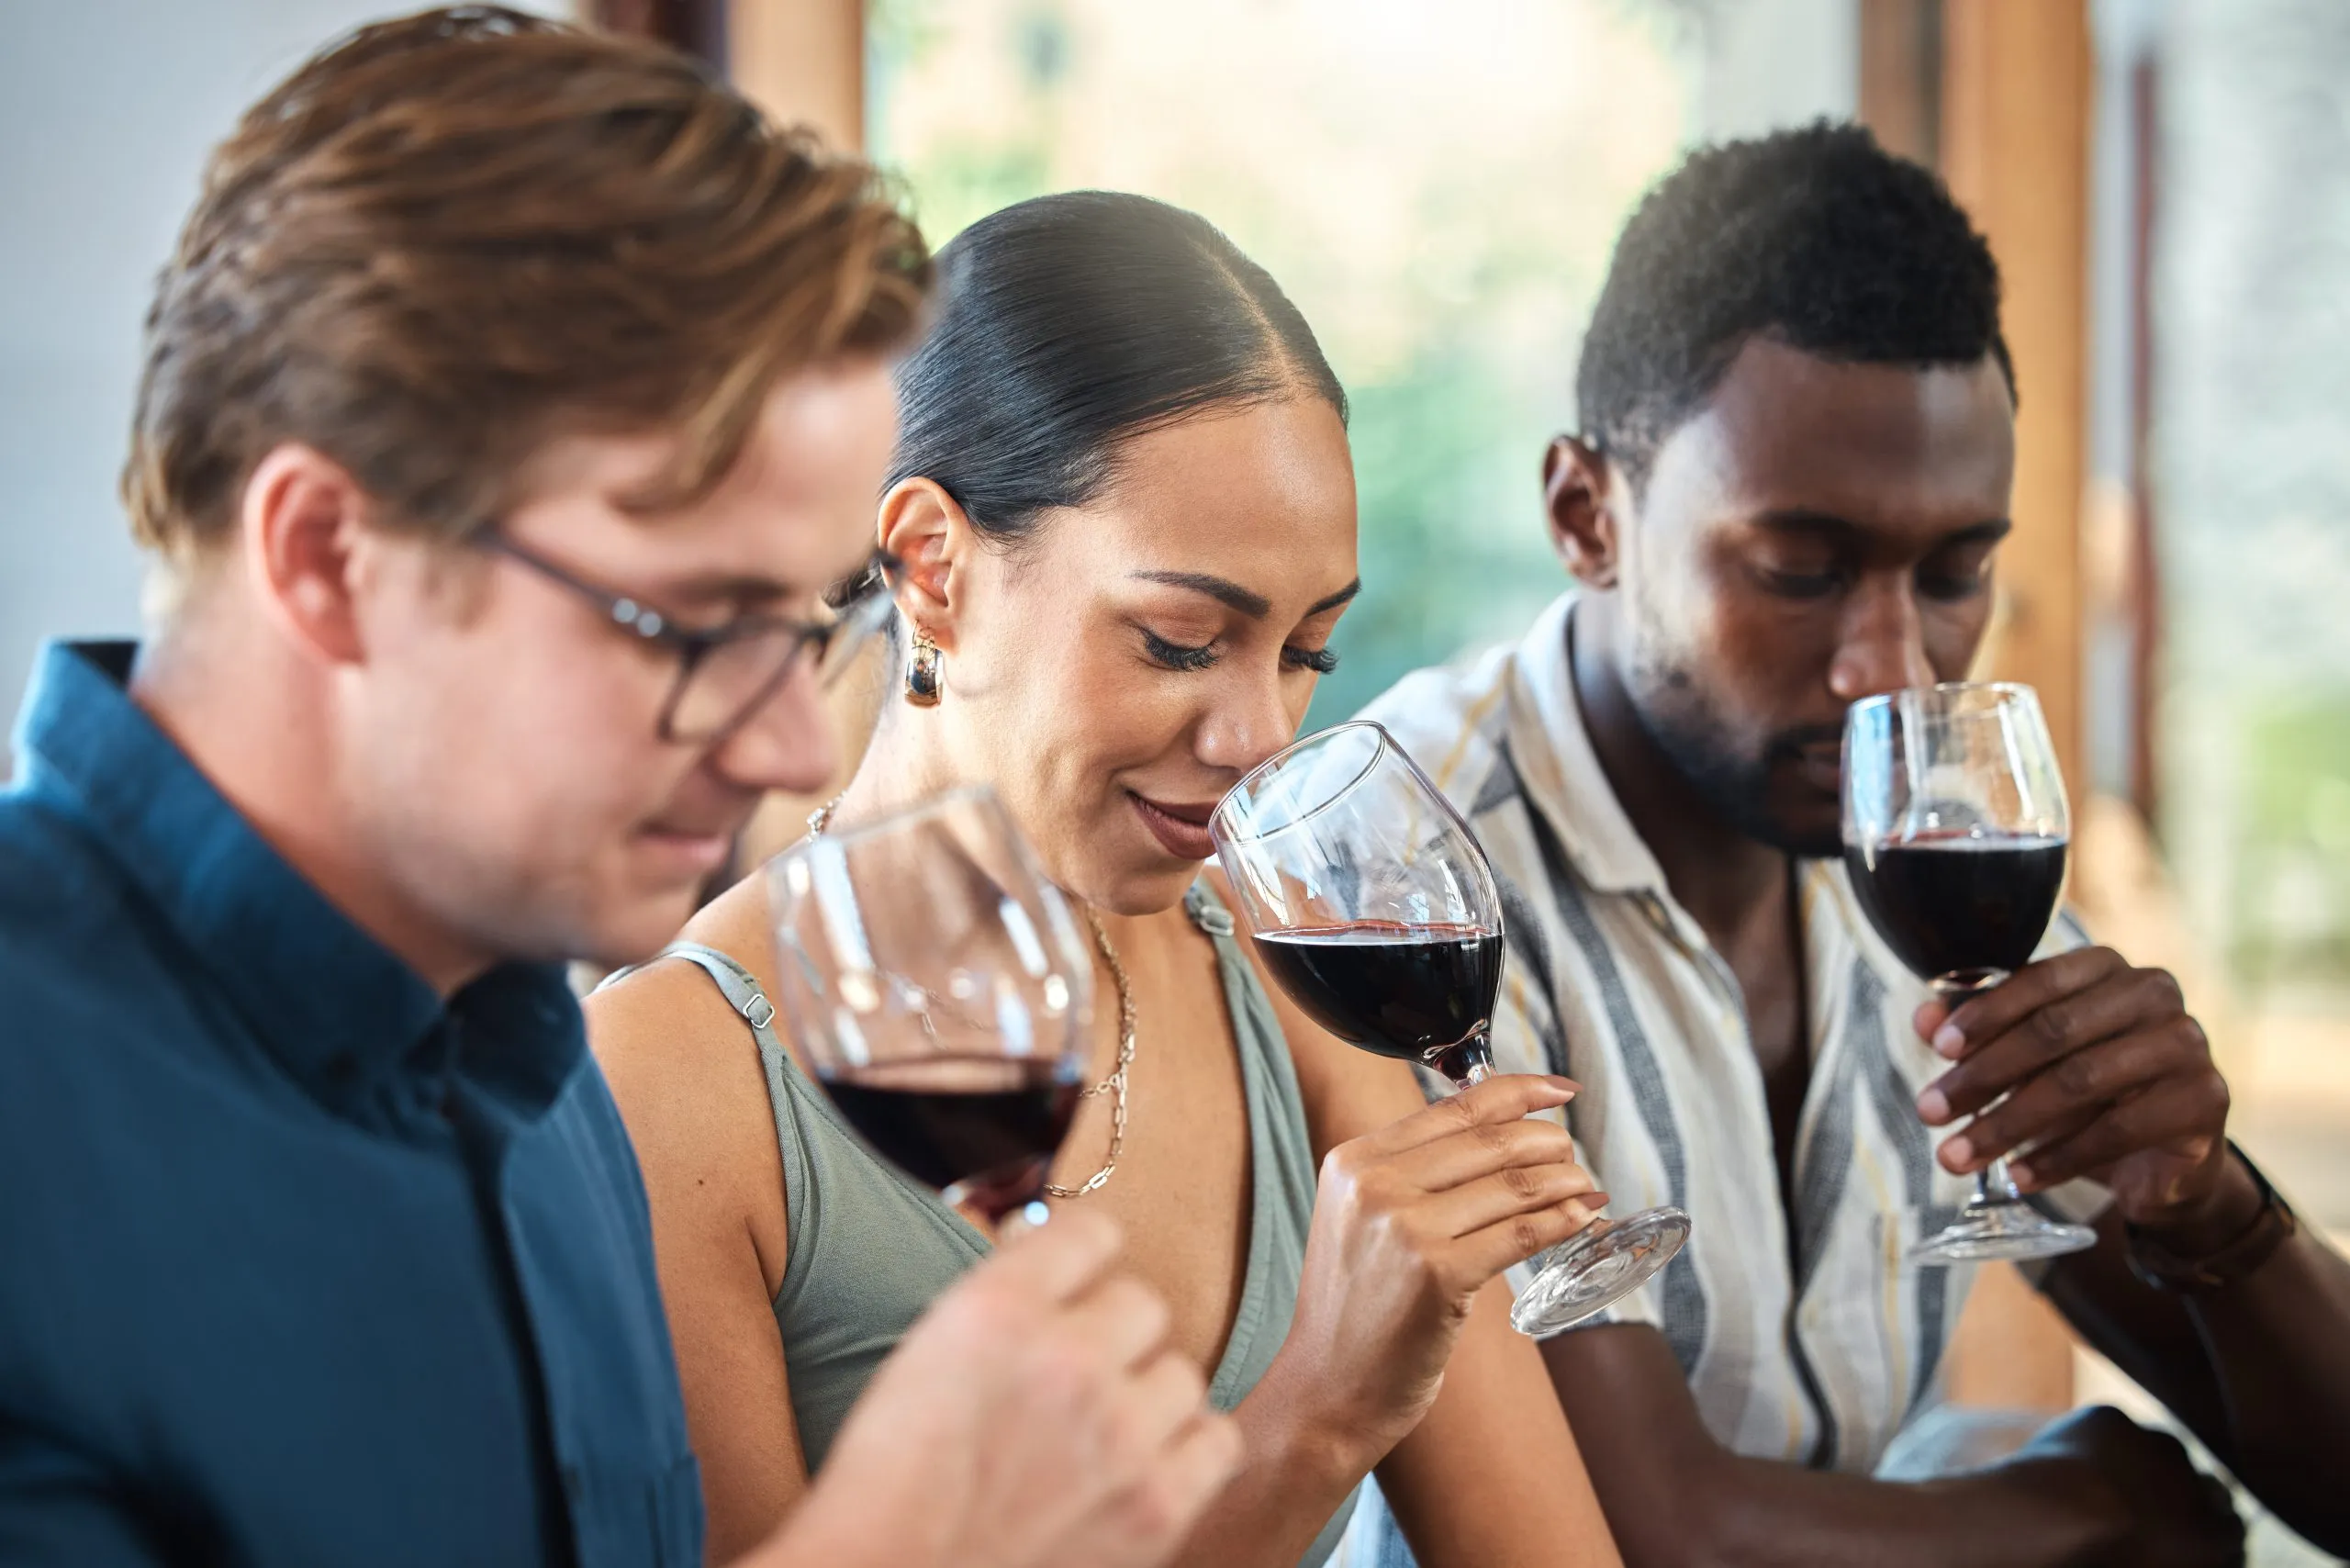 Vielfalt, Luxus und Freunde bei einer Weinprobe in einem Restaurant oder auf einem Weingut, bei der man gemeinsam den Alkohol im Glas riecht. Junge, unbekümmerte Menschen, die zusammenkommen und Spaß haben, bei einer Weintour in einer Destillerie